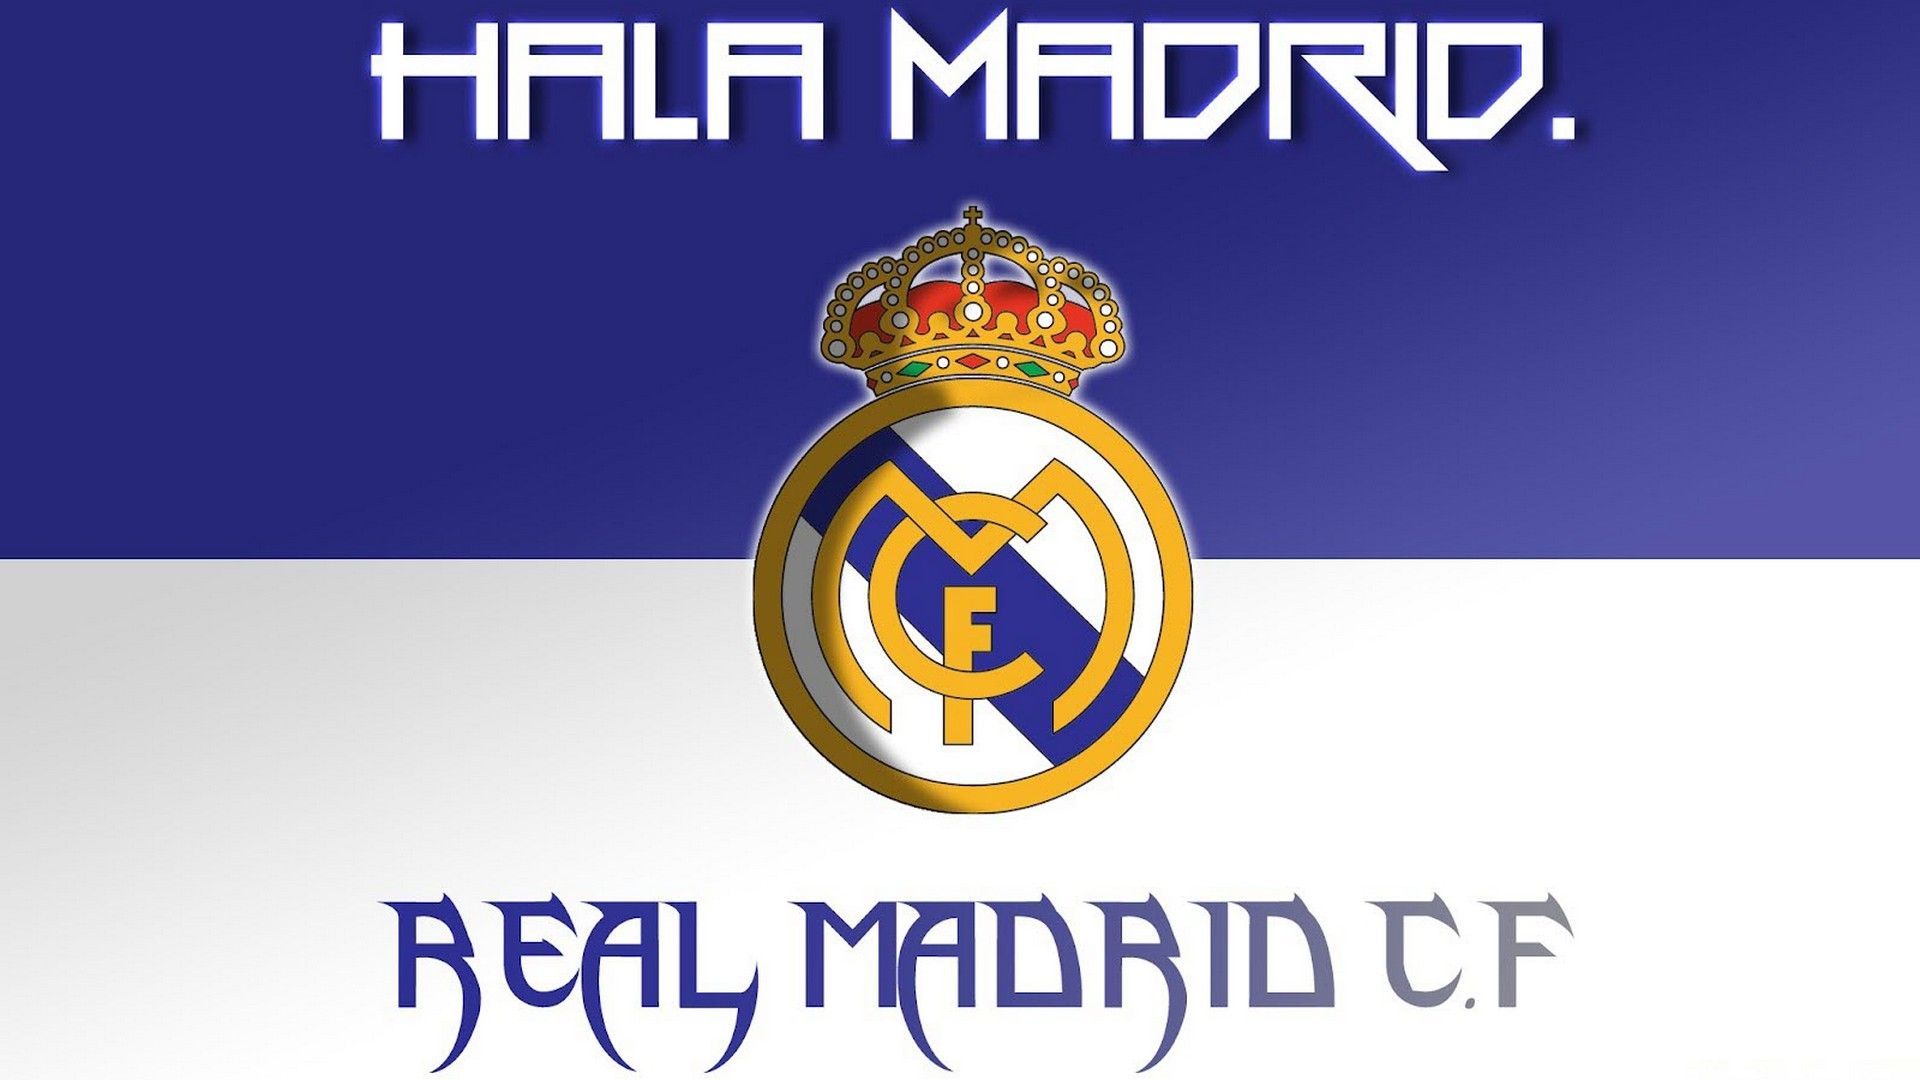 Windows Wallpaper Real Madrid Football Wallpaper